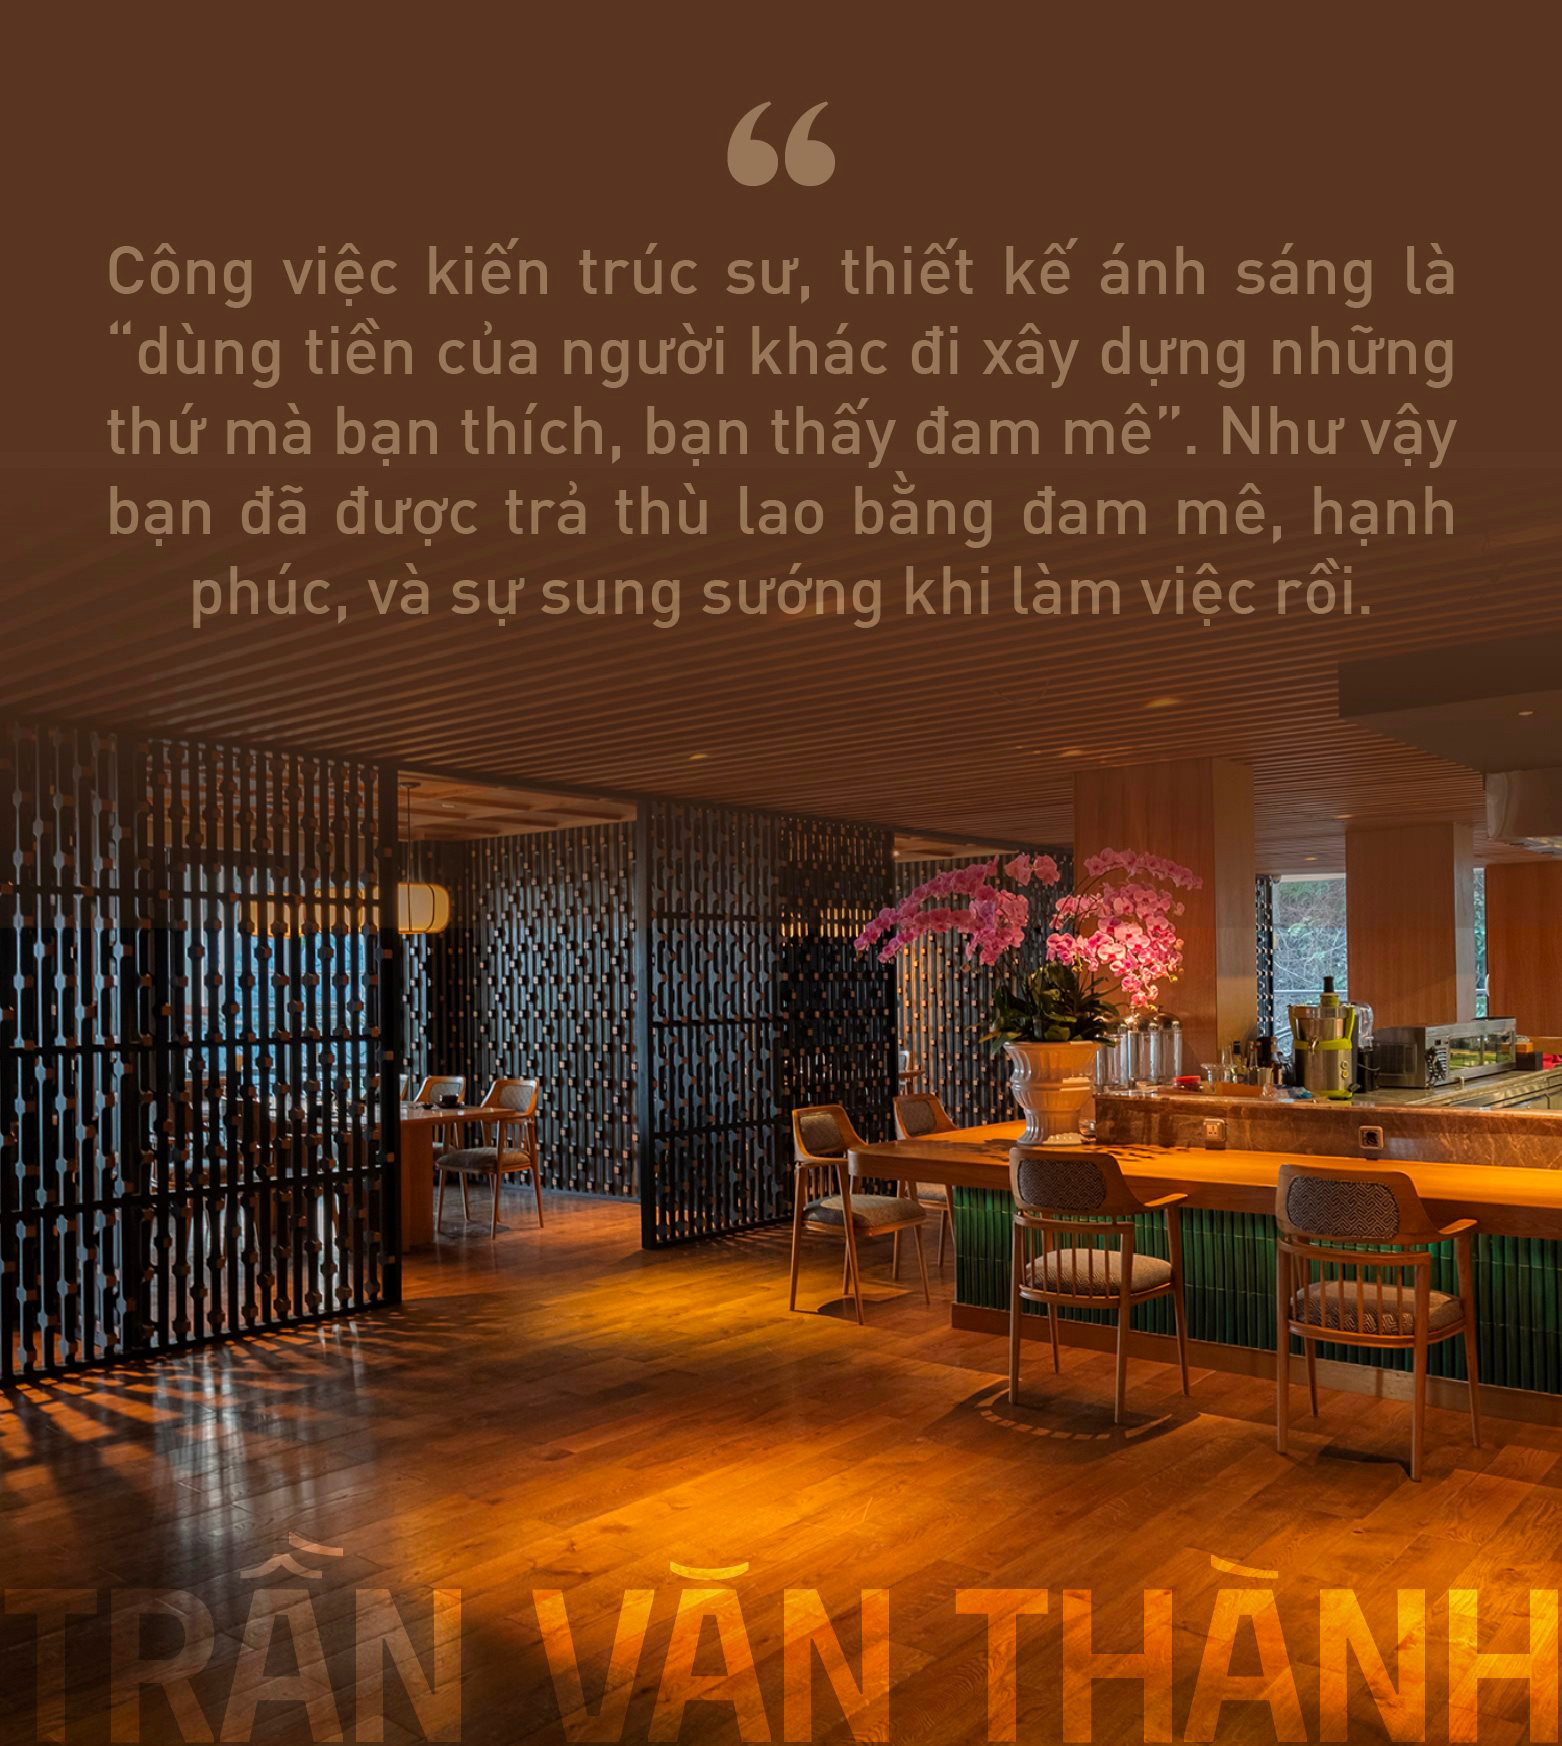 Cố vấn chiếu sáng cho các “ông lớn khách sạn” Trần Văn Thành: Thiết kế ánh sáng là “trang điểm” công trình mà thù lao được trả bằng một thứ không phải tiền bạc - Ảnh 8.